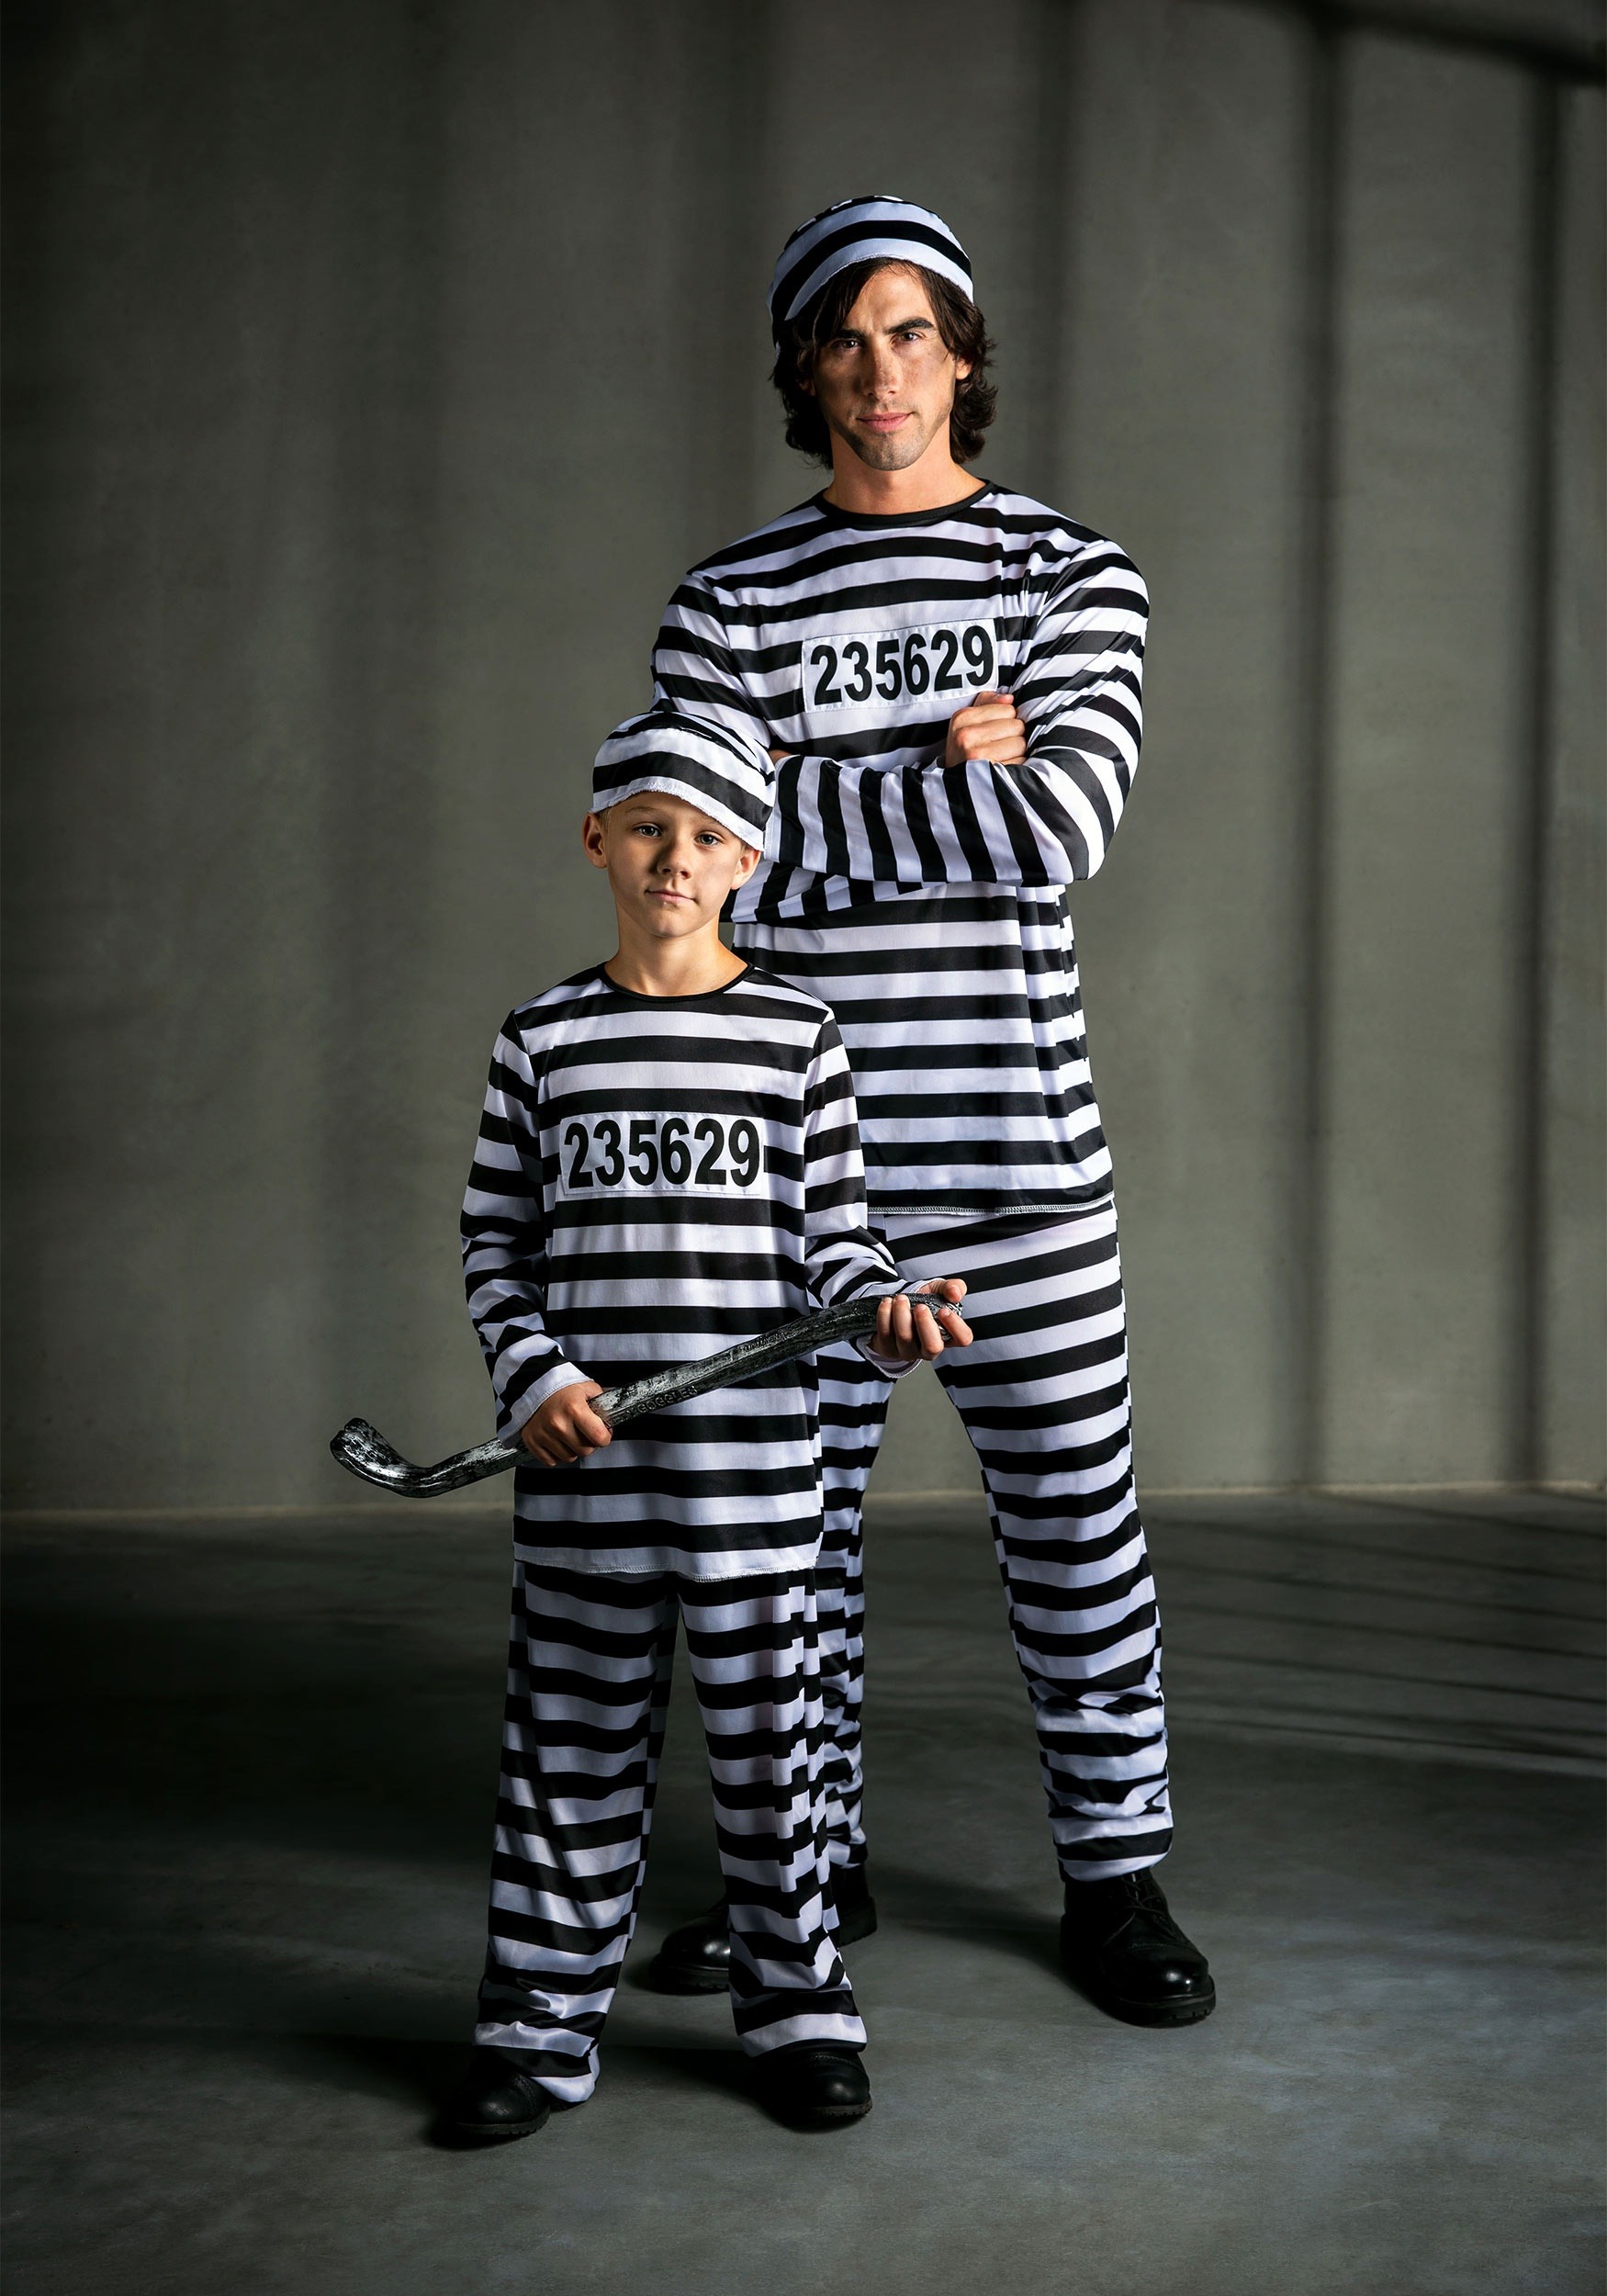 Plus Size Men's Prisoner Costume - image 3 of 5